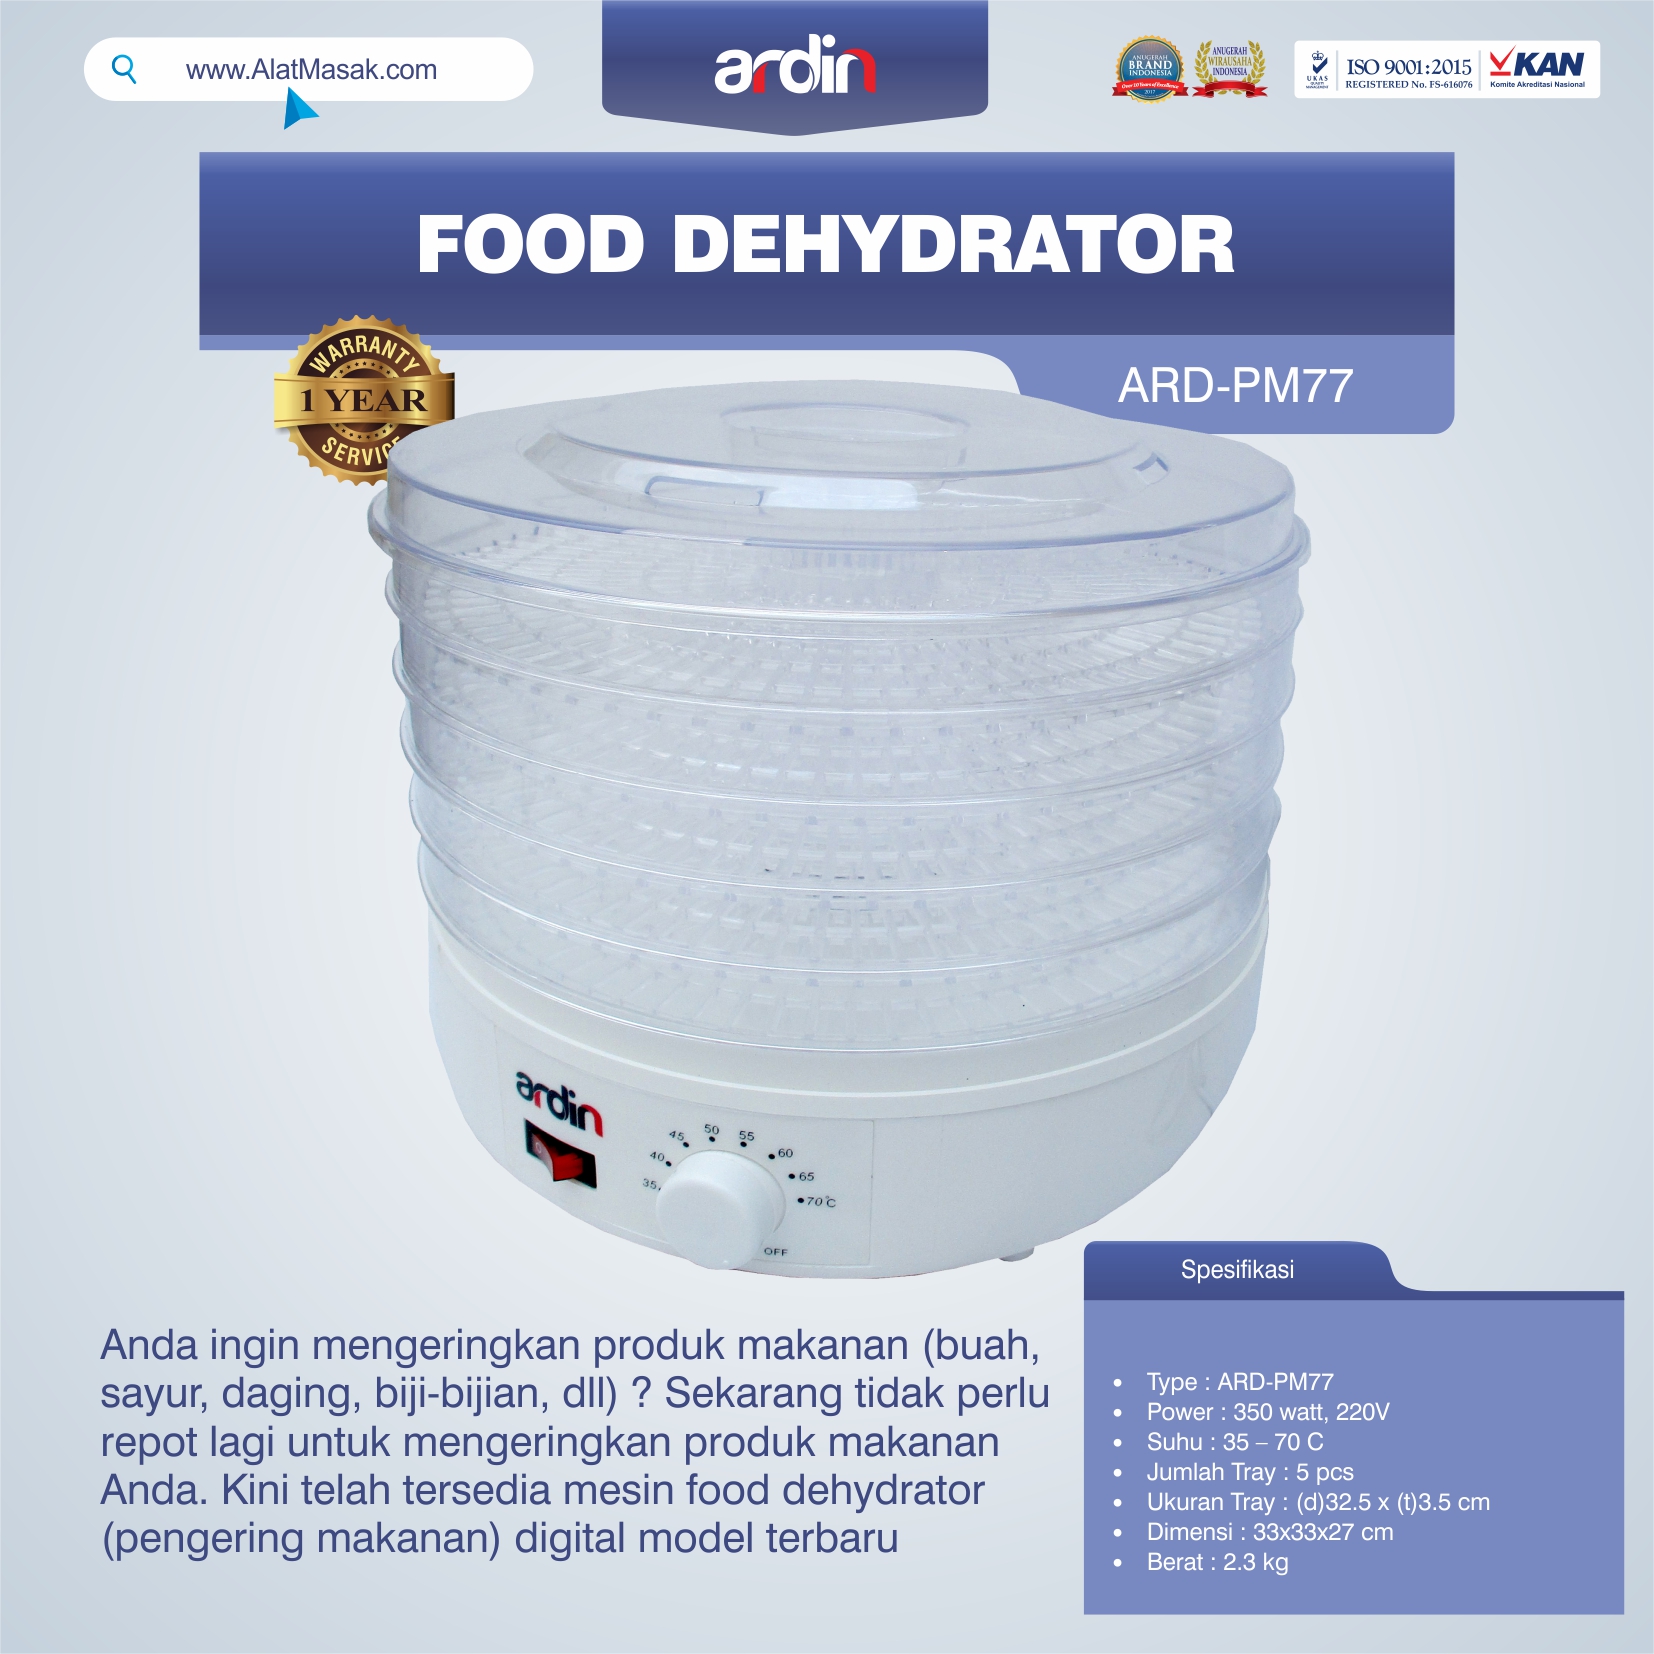 Jual Food Dehydrator ARD-PM77 di Semarang